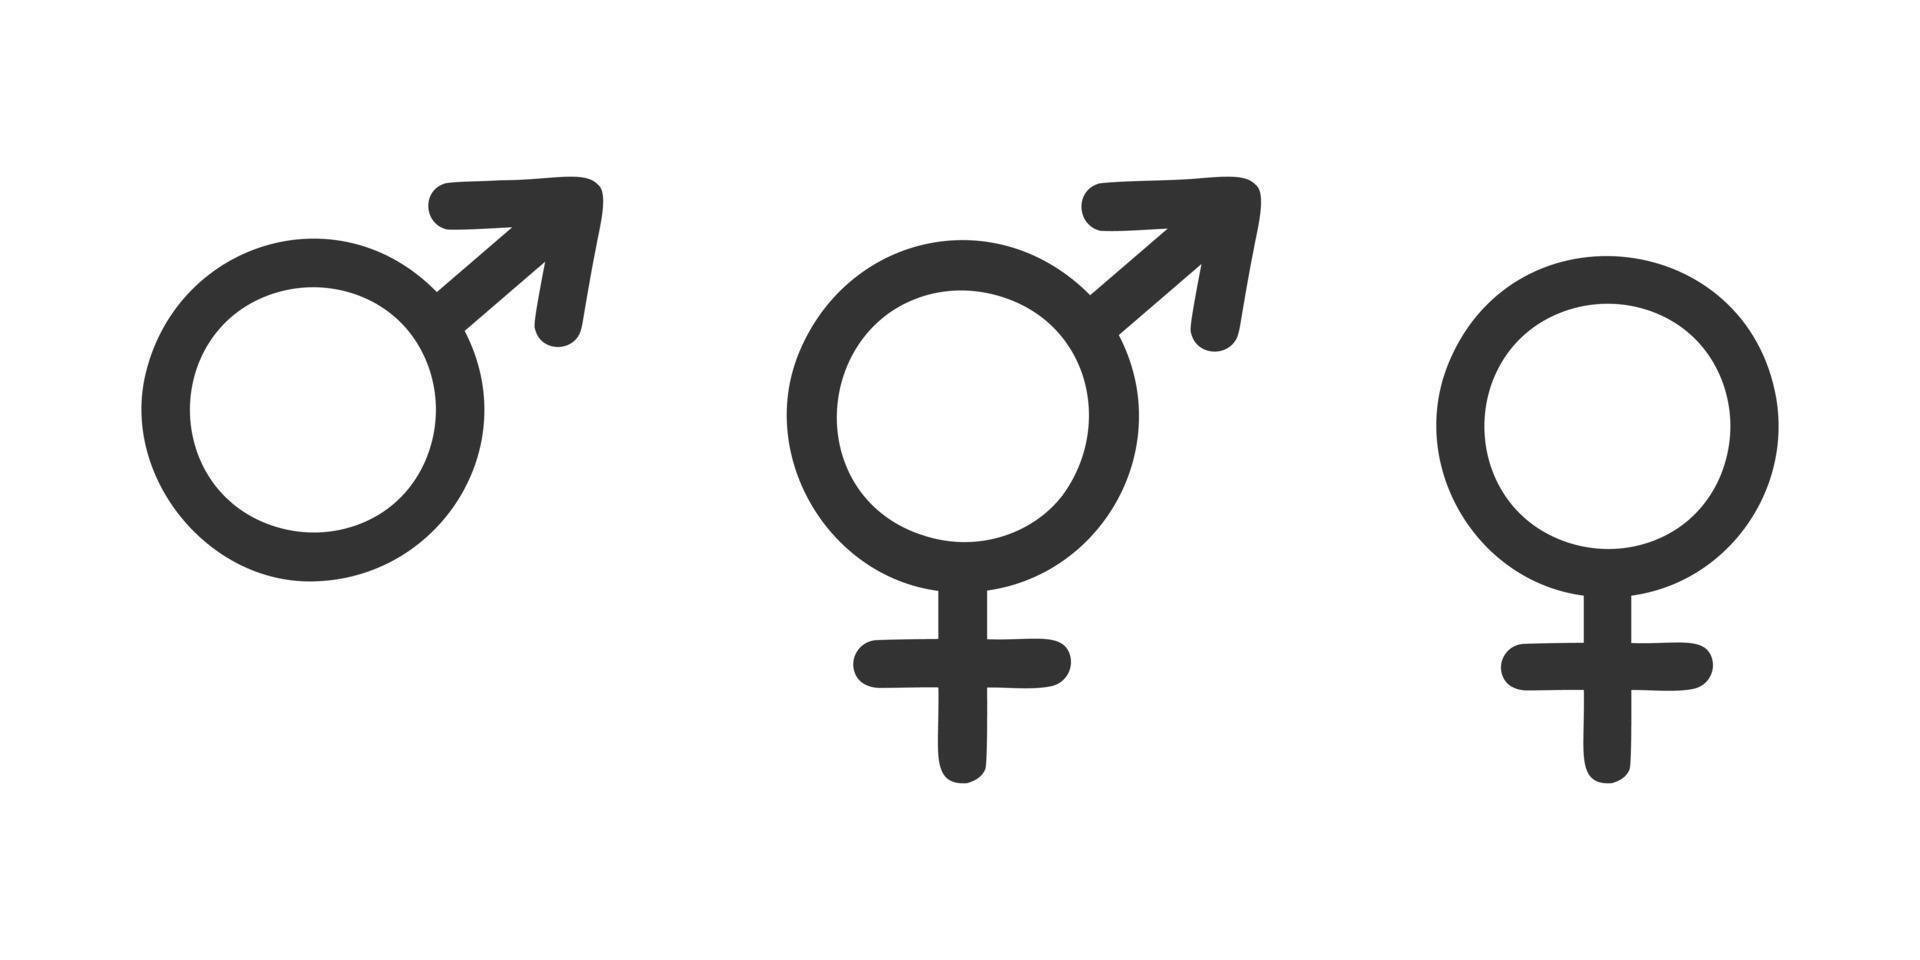 manlig, kvinna och trans tecken. offentlig toalett ikoner vektor